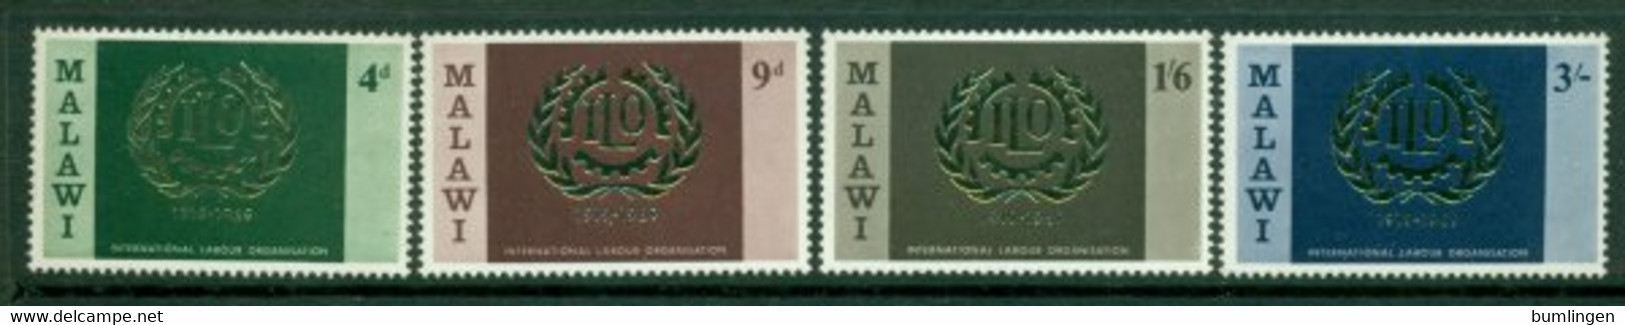 MALAWI 1969 Mi 106-09** 50th Anniversary Of The Labour Organization ILO [DP335] - ILO